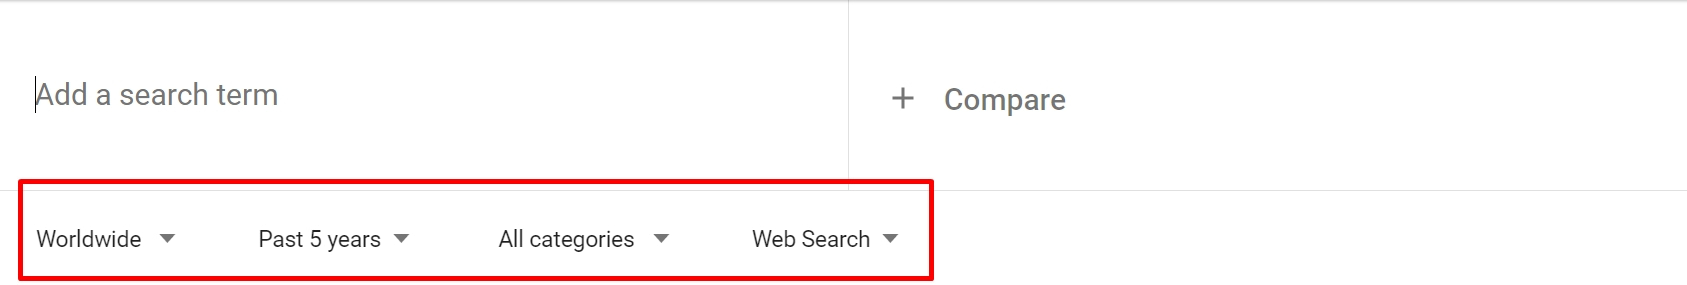 Google 趨勢中的搜索選項